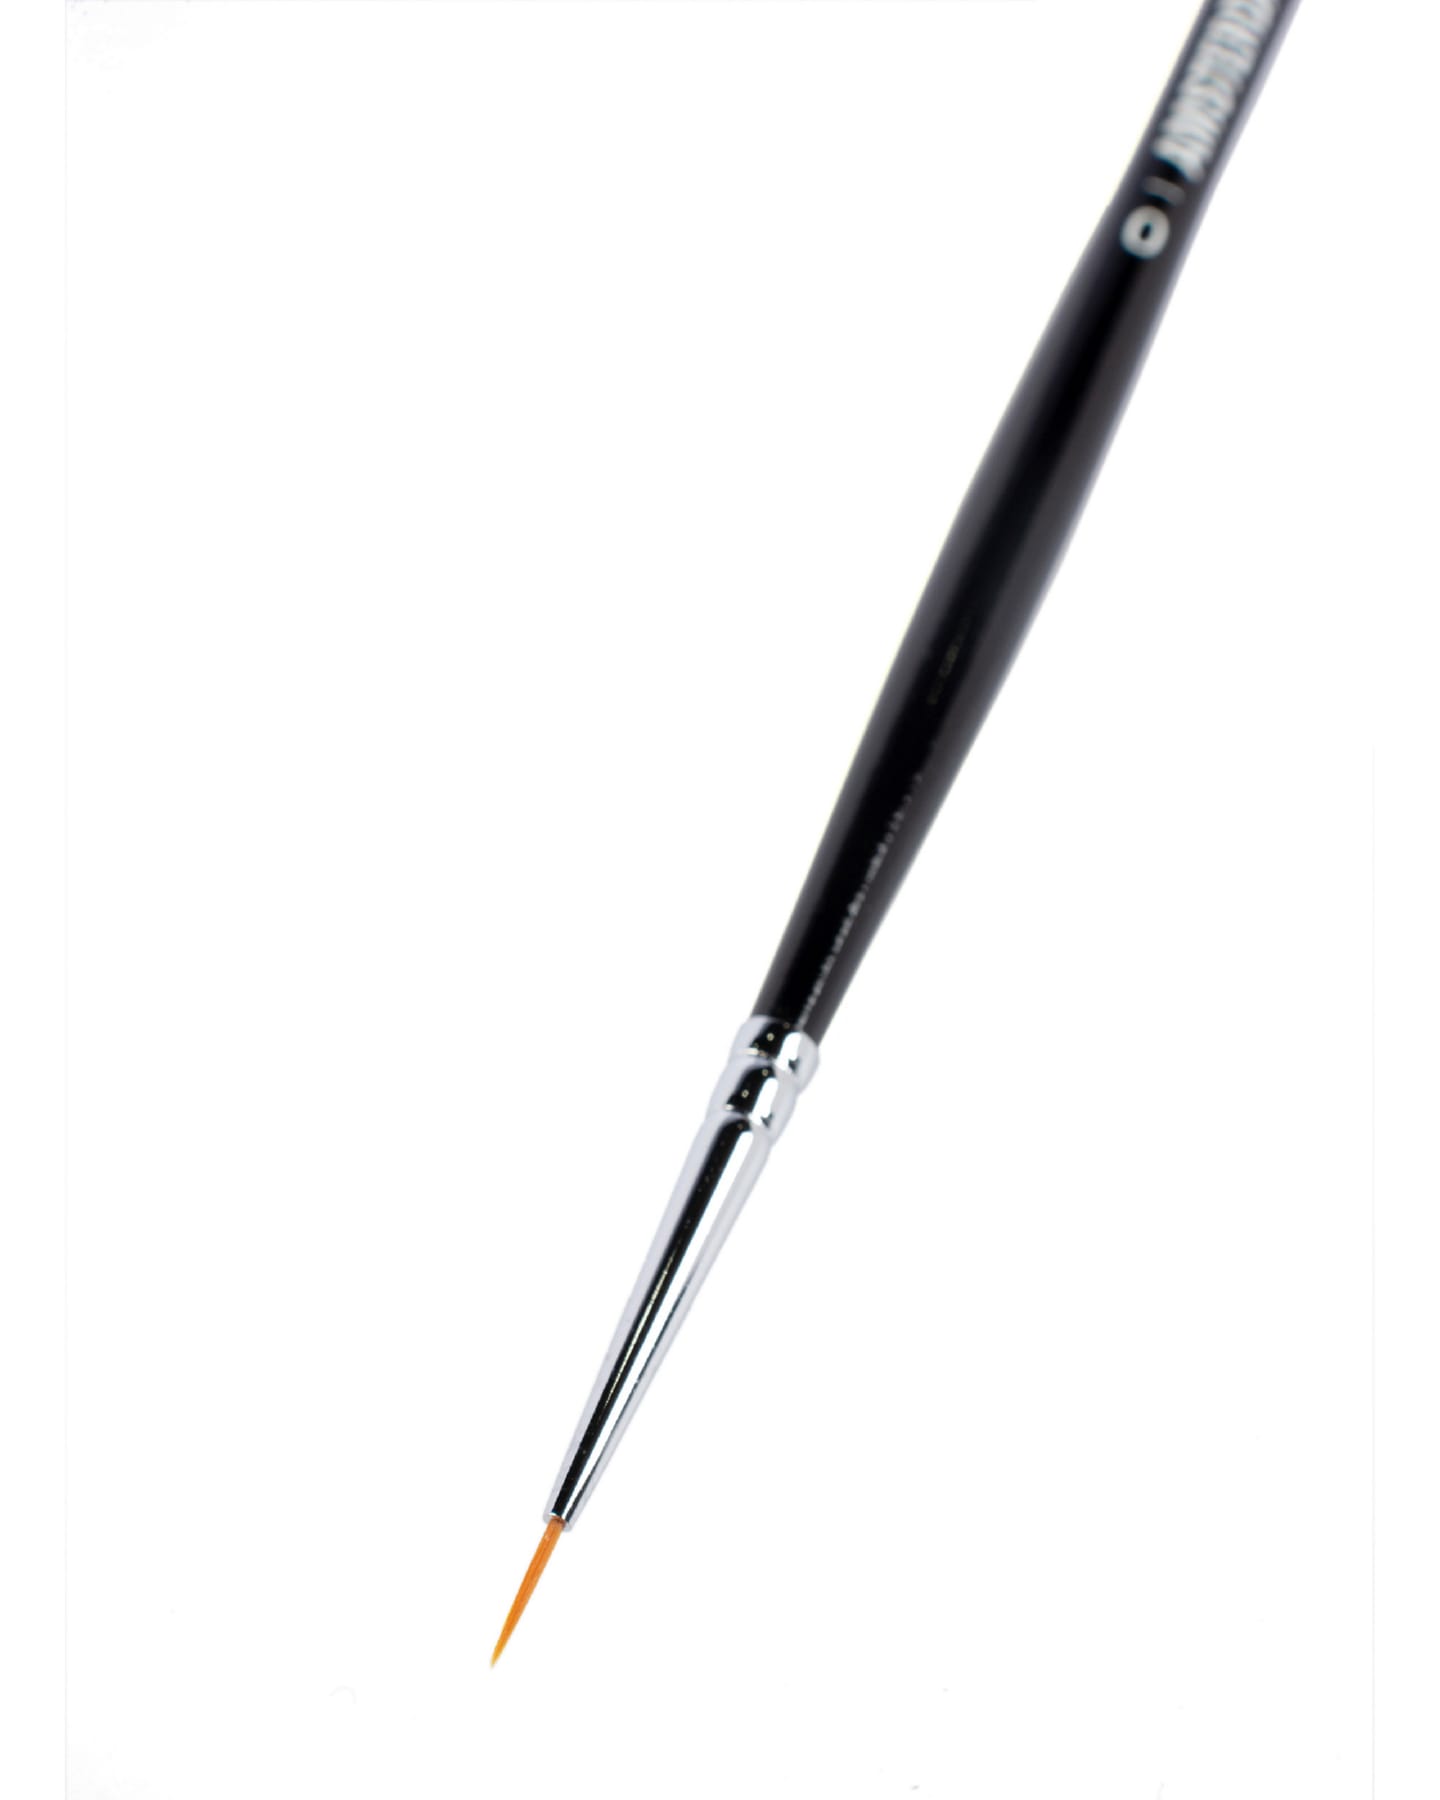 Кисть для акрила Amsterdam 341 синтетика мягкая круглая ручка длинная 5 шт/упак 11 размера в ассортименте